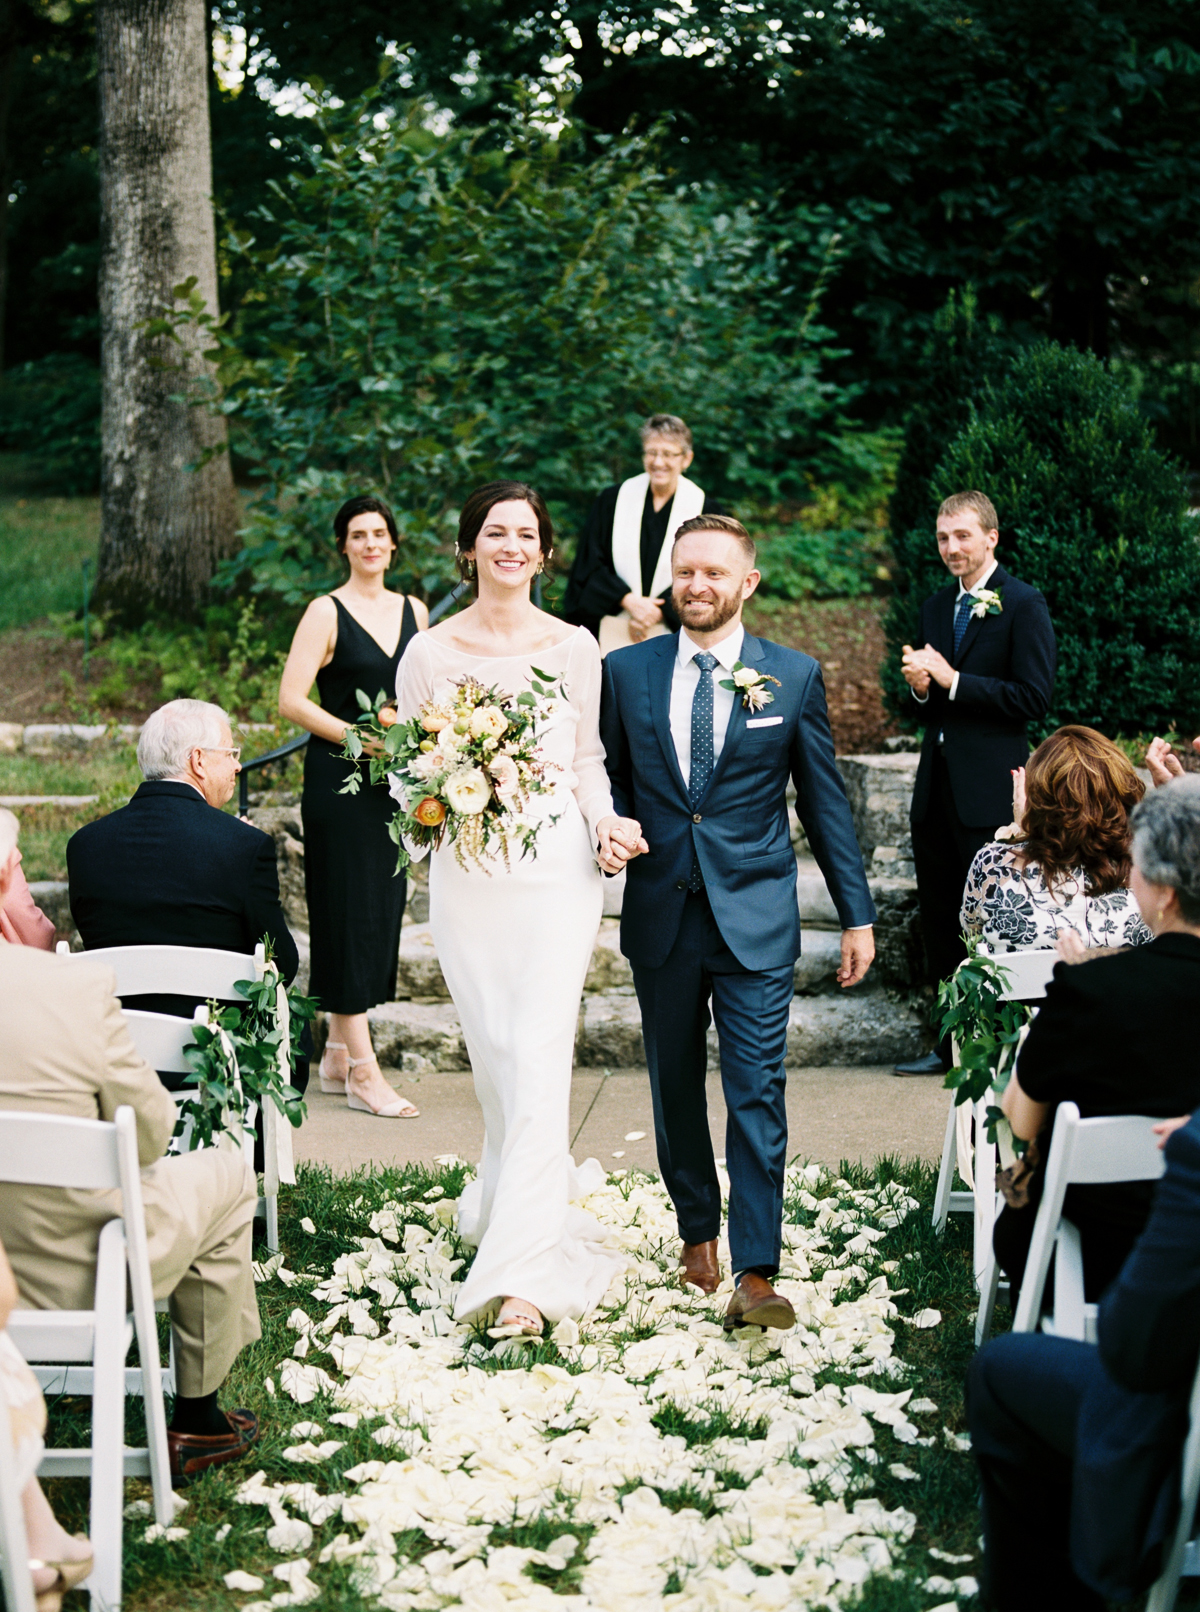 Architecture Inspired Garden Wedding // Natural Floral Design in Nashville